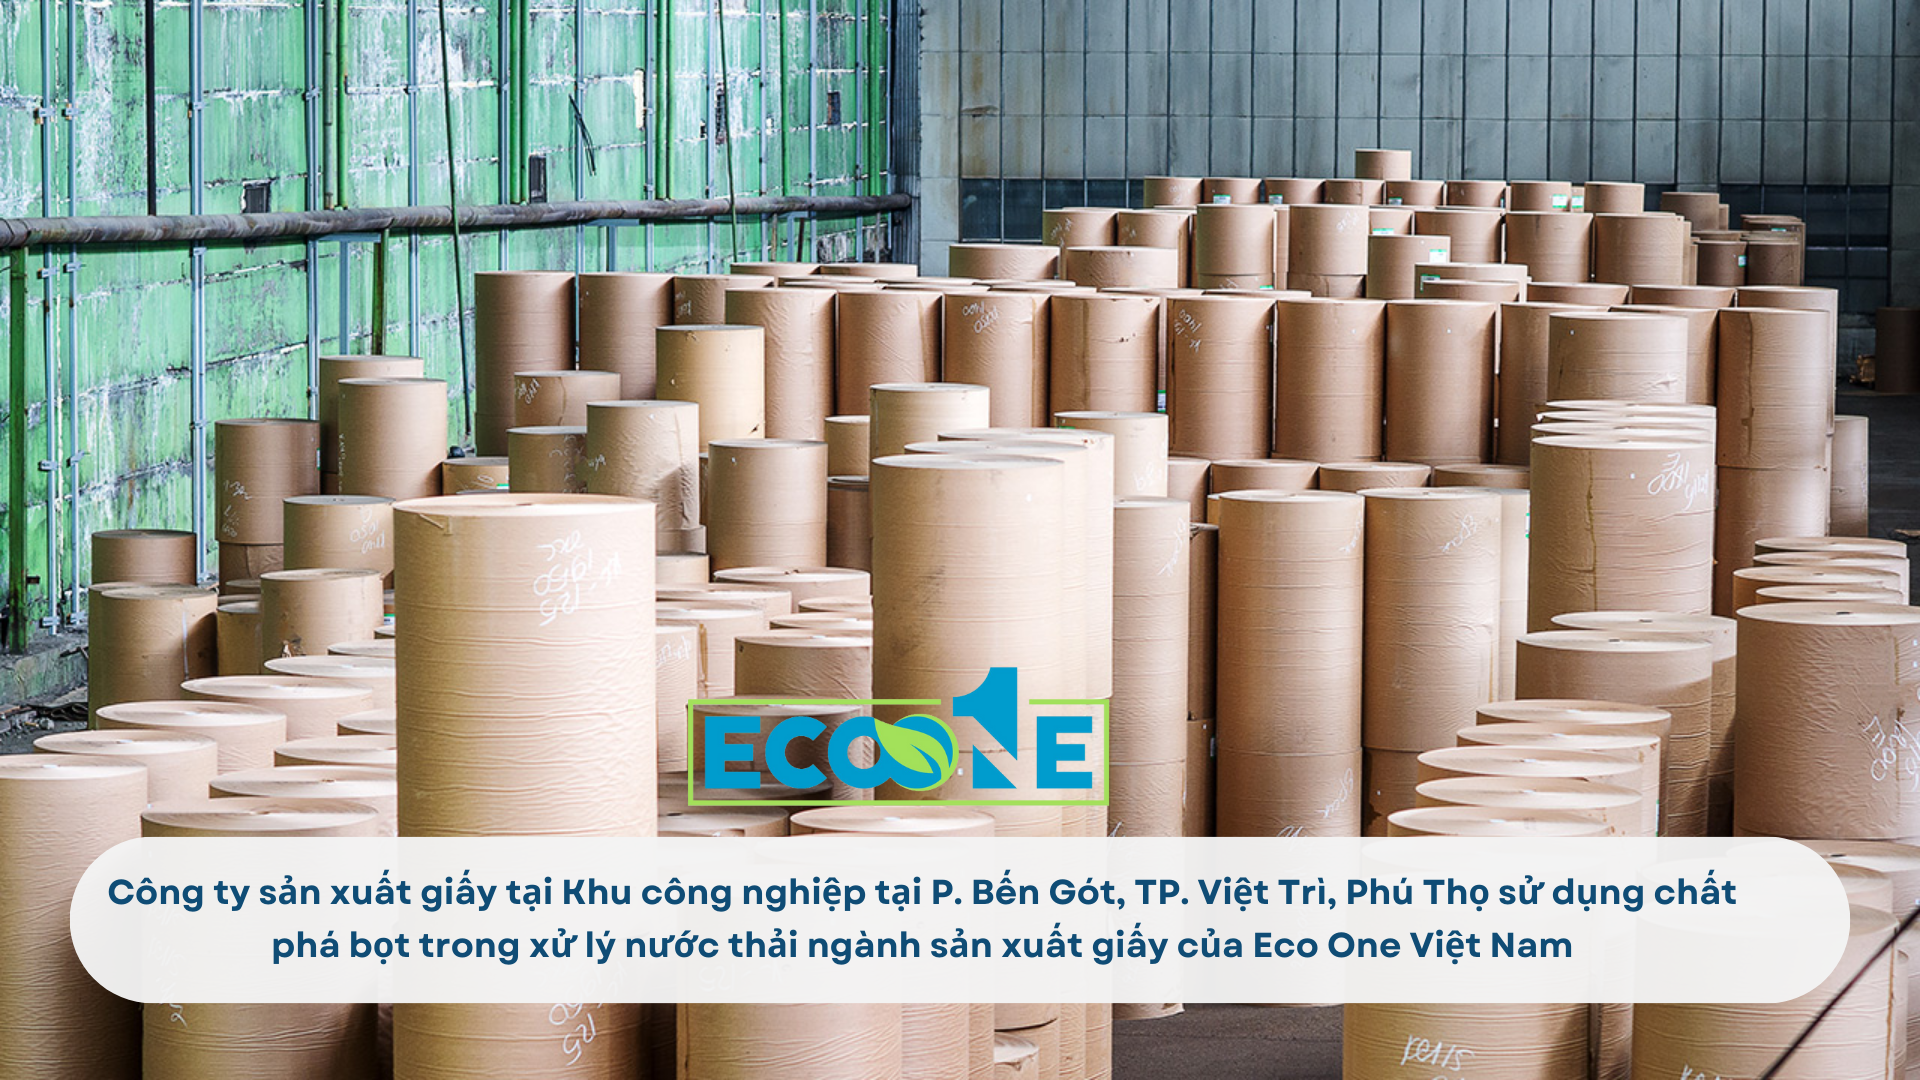 Công ty sản xuất giấy tại Khu công nghiệp tại P. Bến Gót, TP. Việt Trì, Phú Thọ sử dụng chất phá bọt trong xử lý nước thải ngành sản xuất giấy của Eco One Việt Nam